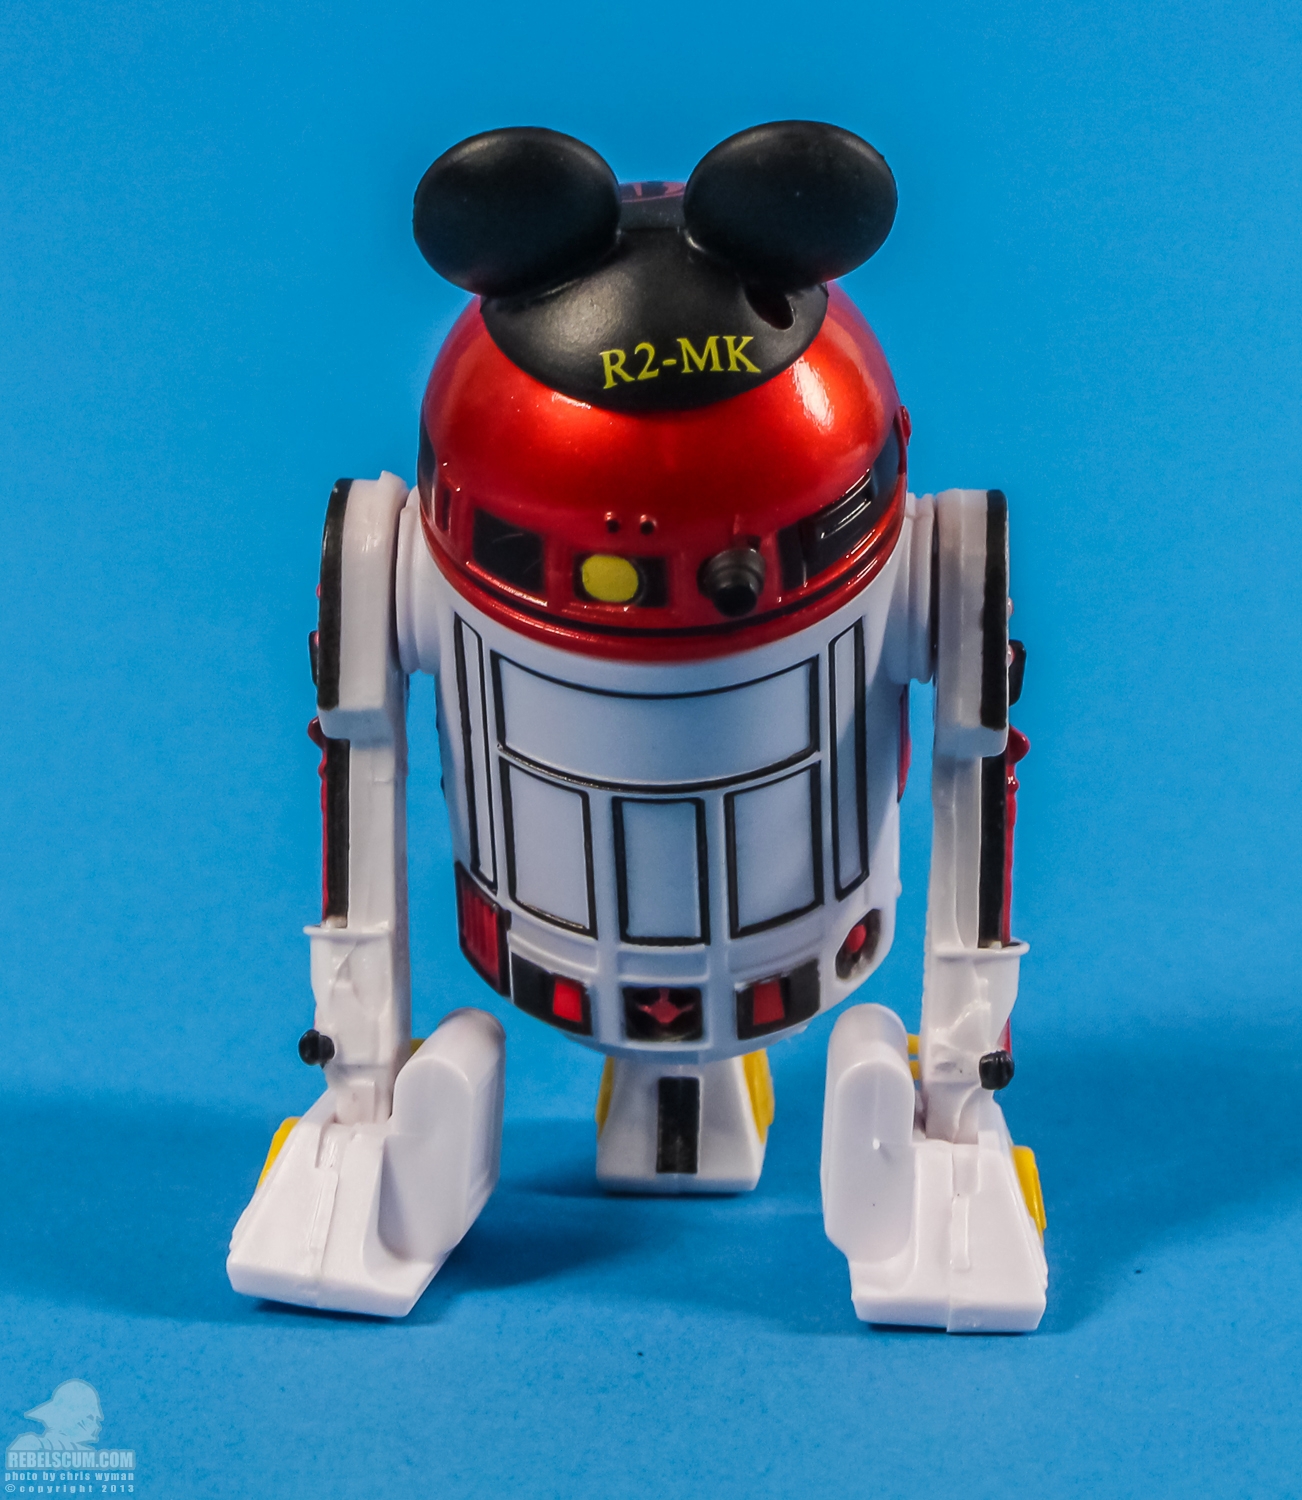 Disney_Parks_Jedi_Mickeys_Starfighter_Hasbro-08.jpg